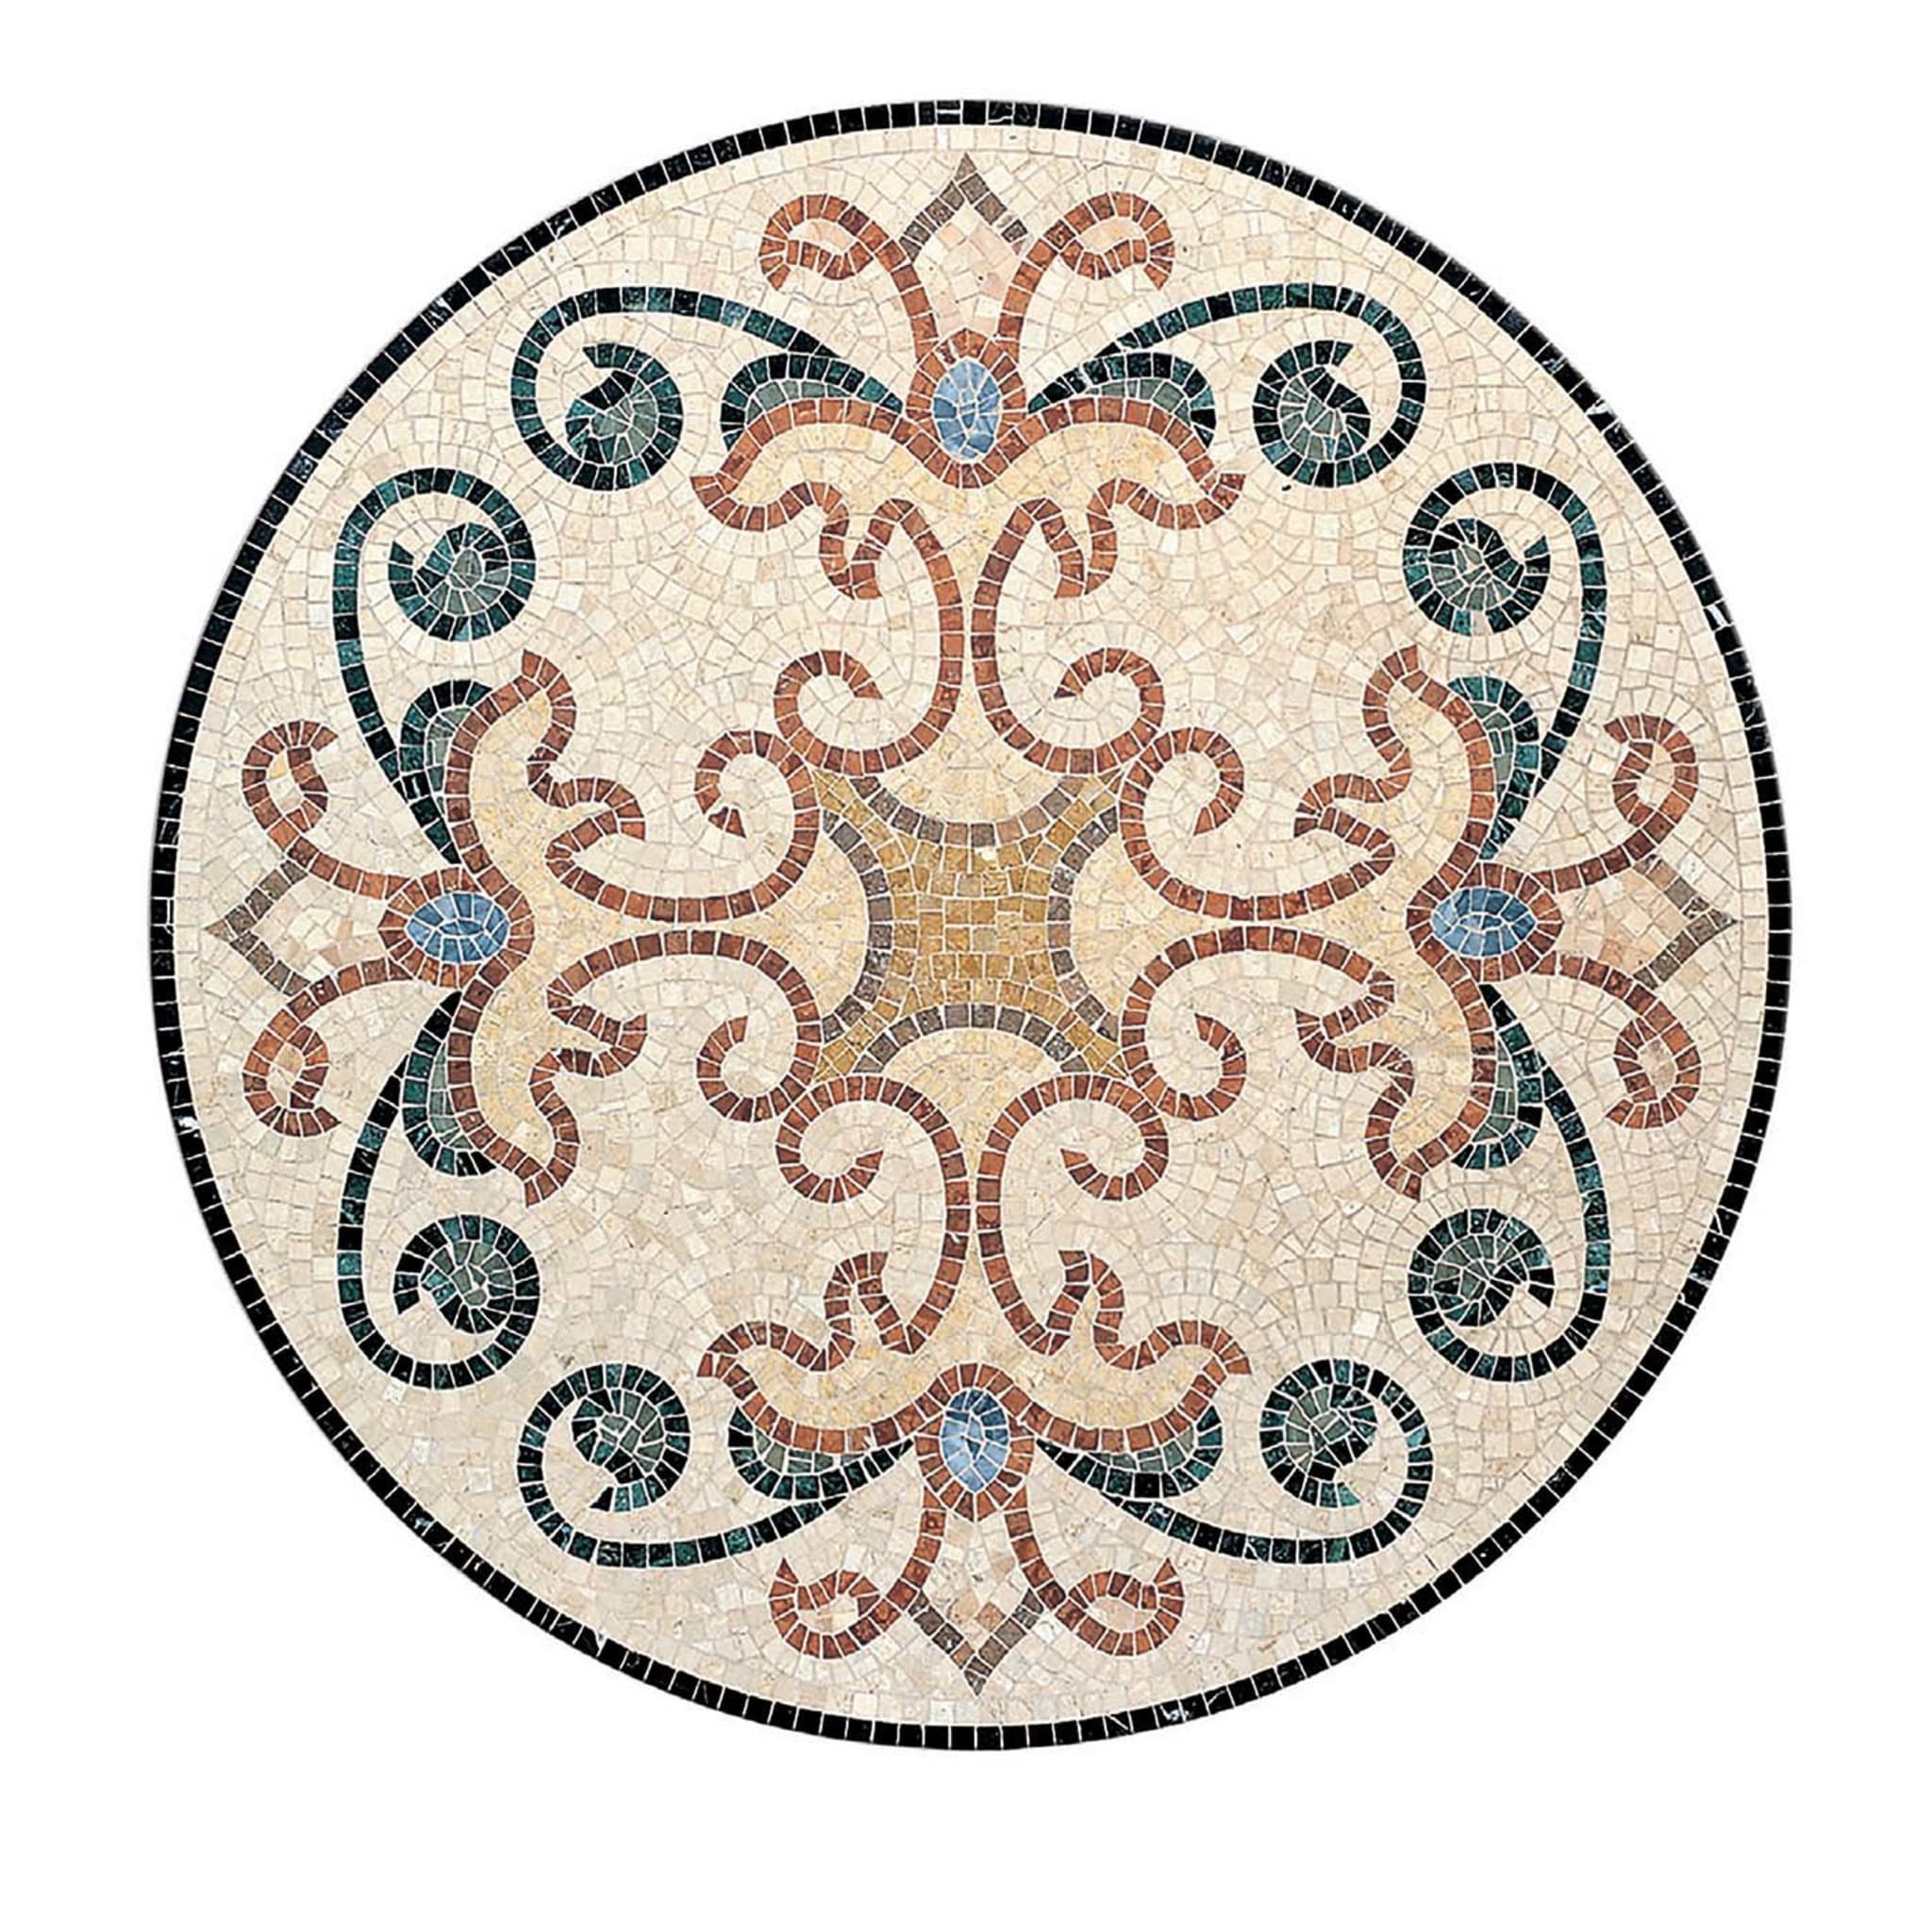 Oikos Rosette Mosaic - Main view